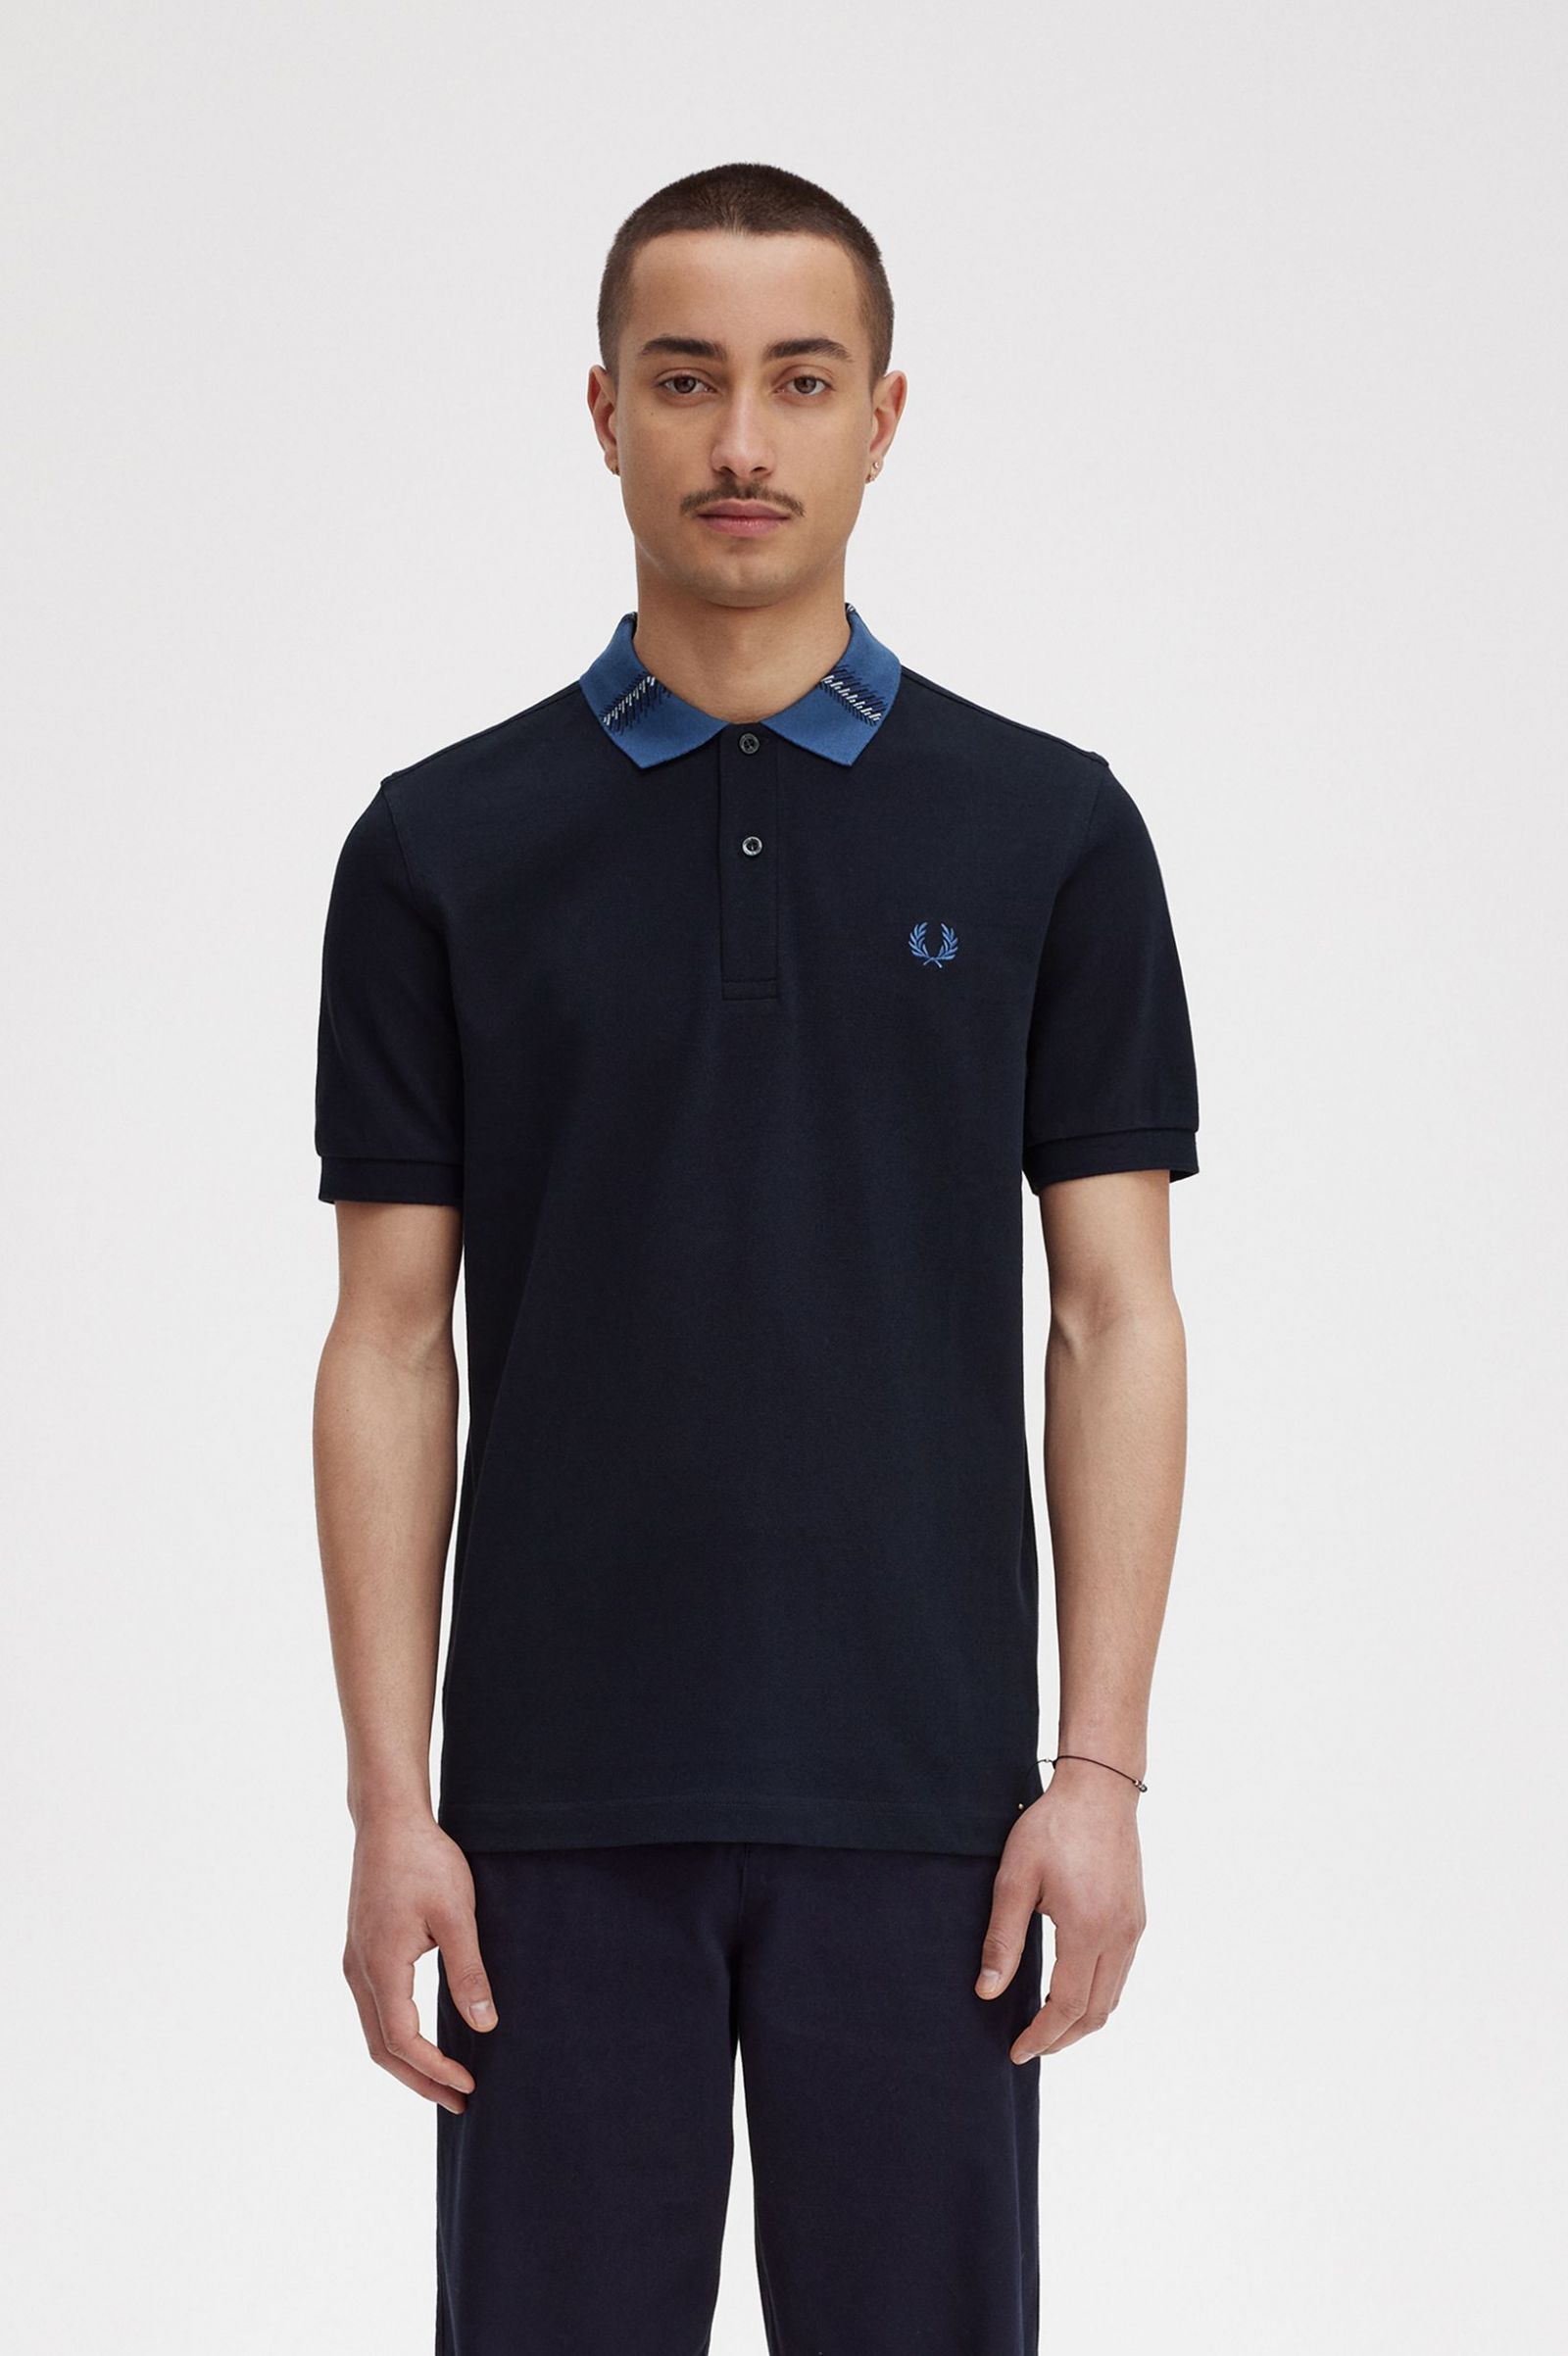 Graphic Collar Polo Shirt - Navy | Men's Polo Shirts | Short & Long ...